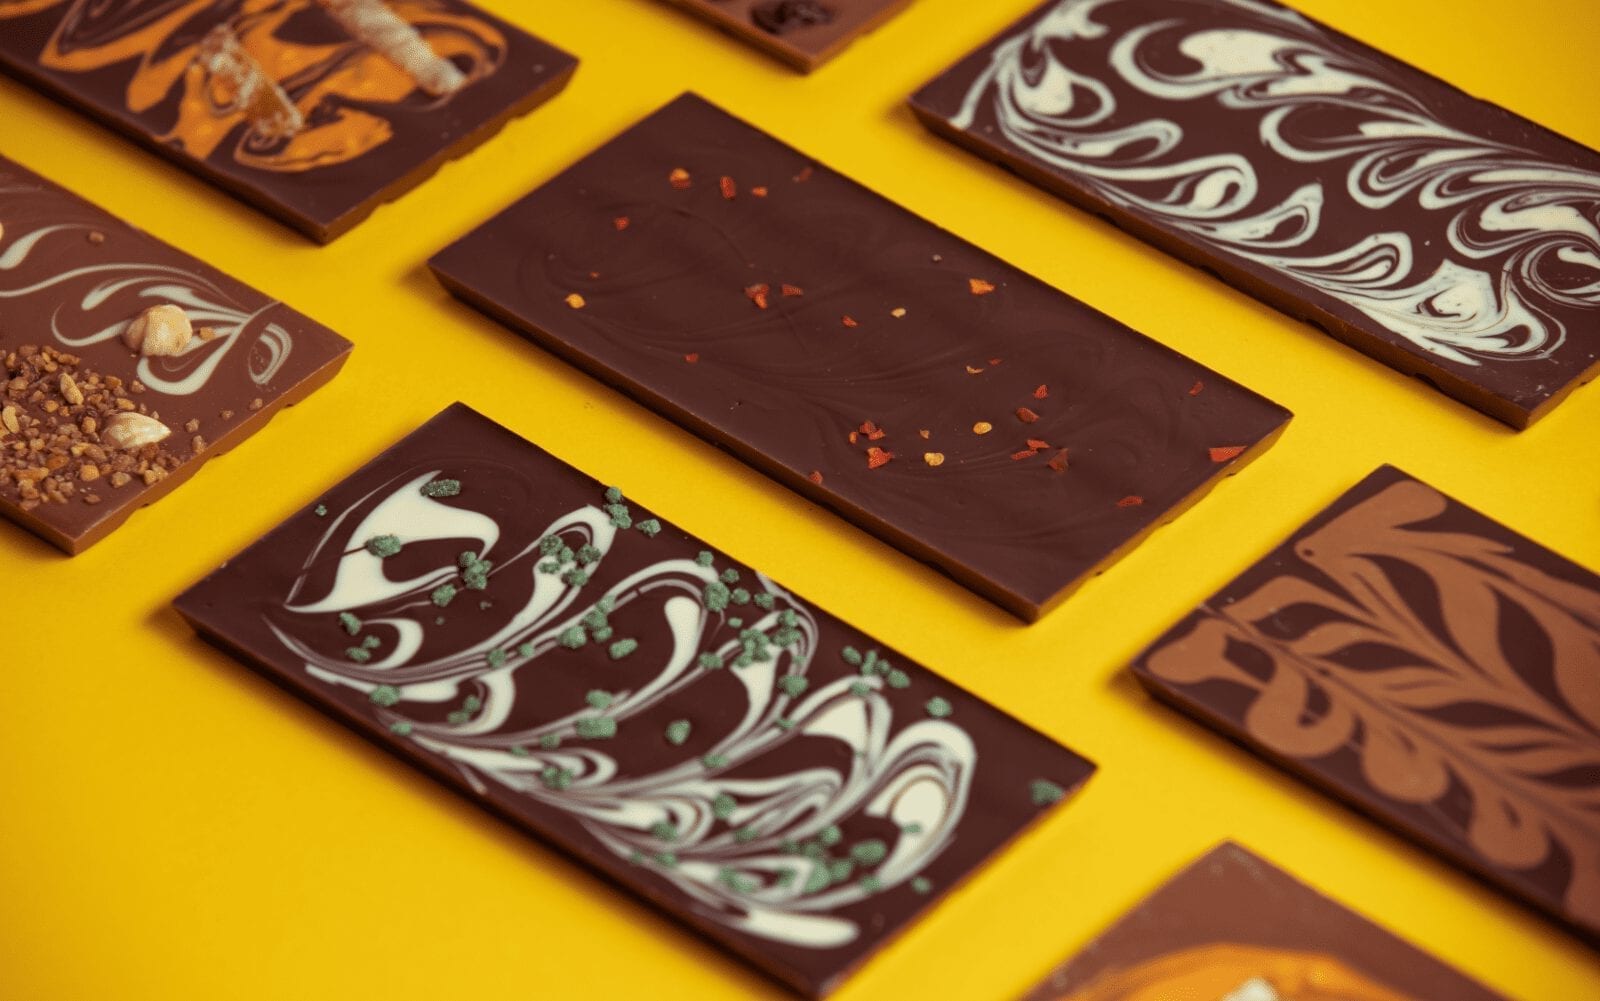 Wilde Irish Chocolate - varieties bar